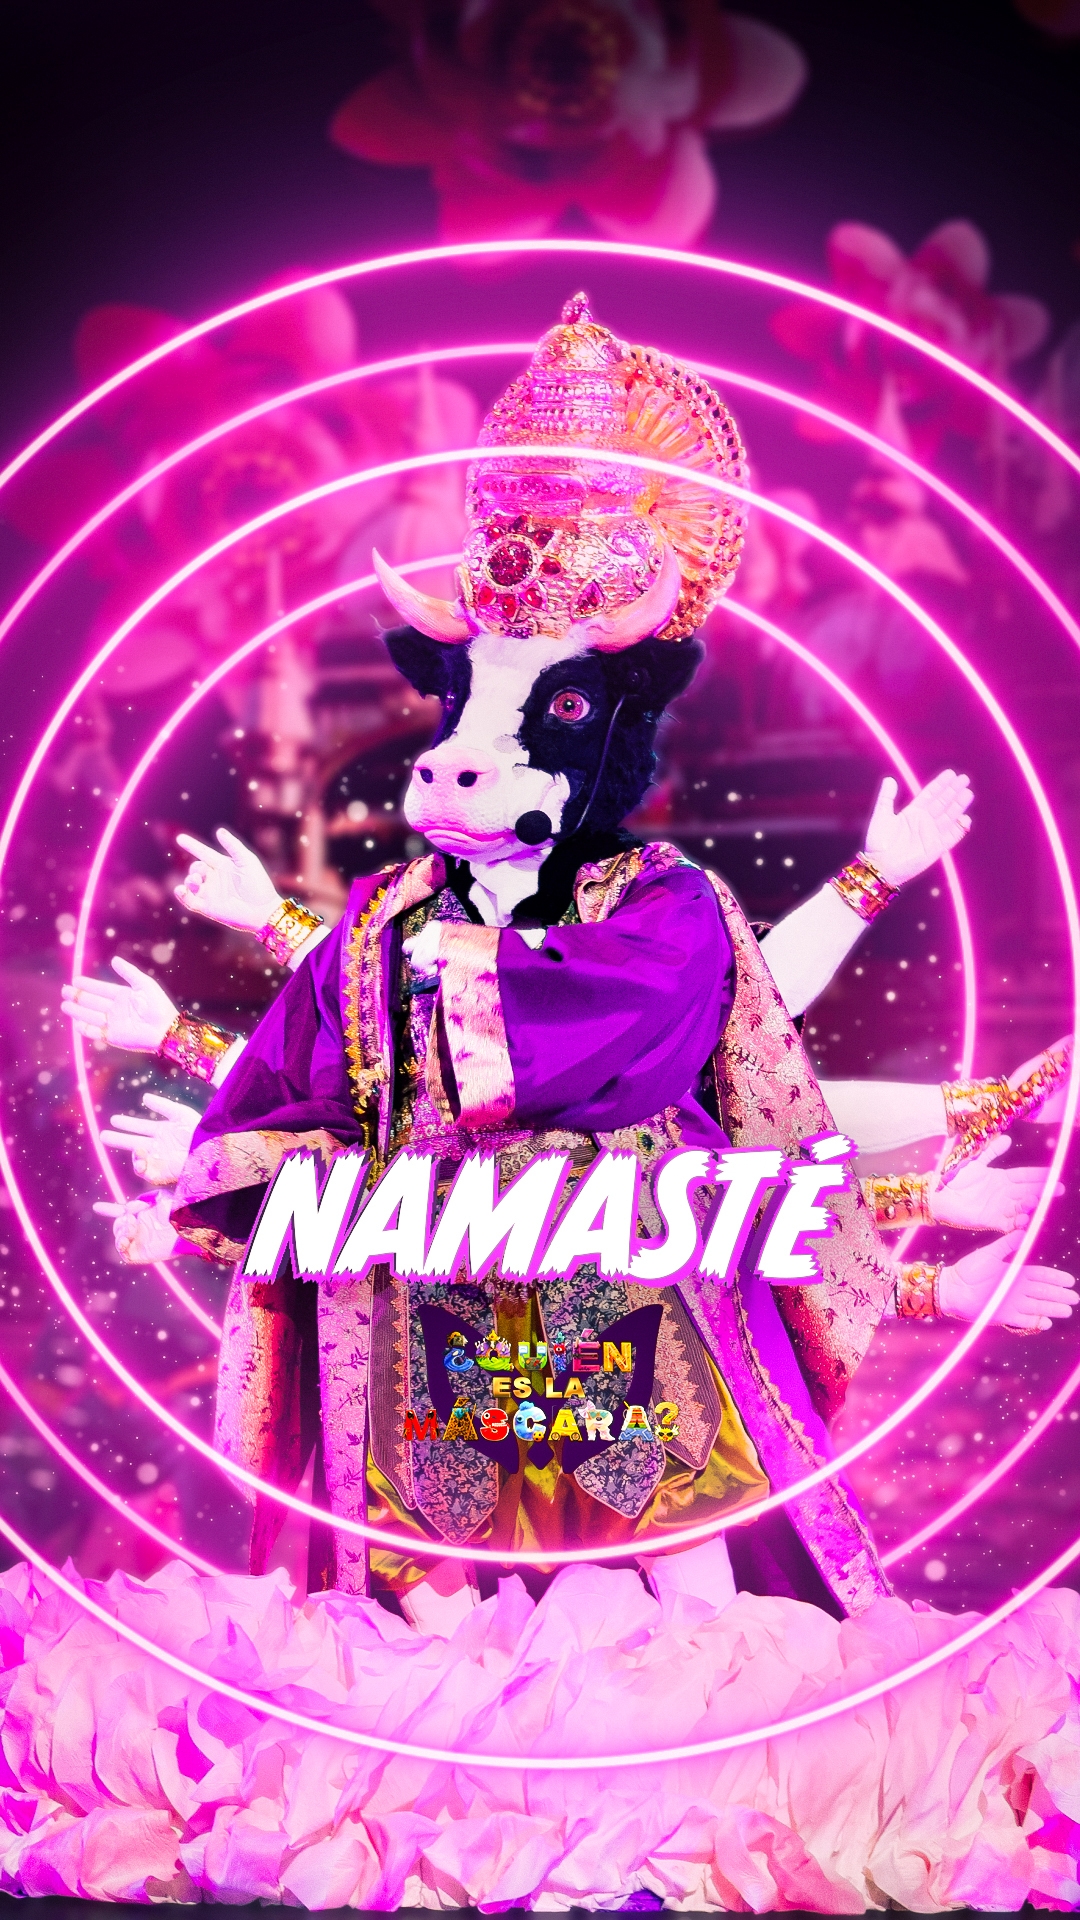 Namasté reveló su identidad esta noche en ¿Quién es la máscara?